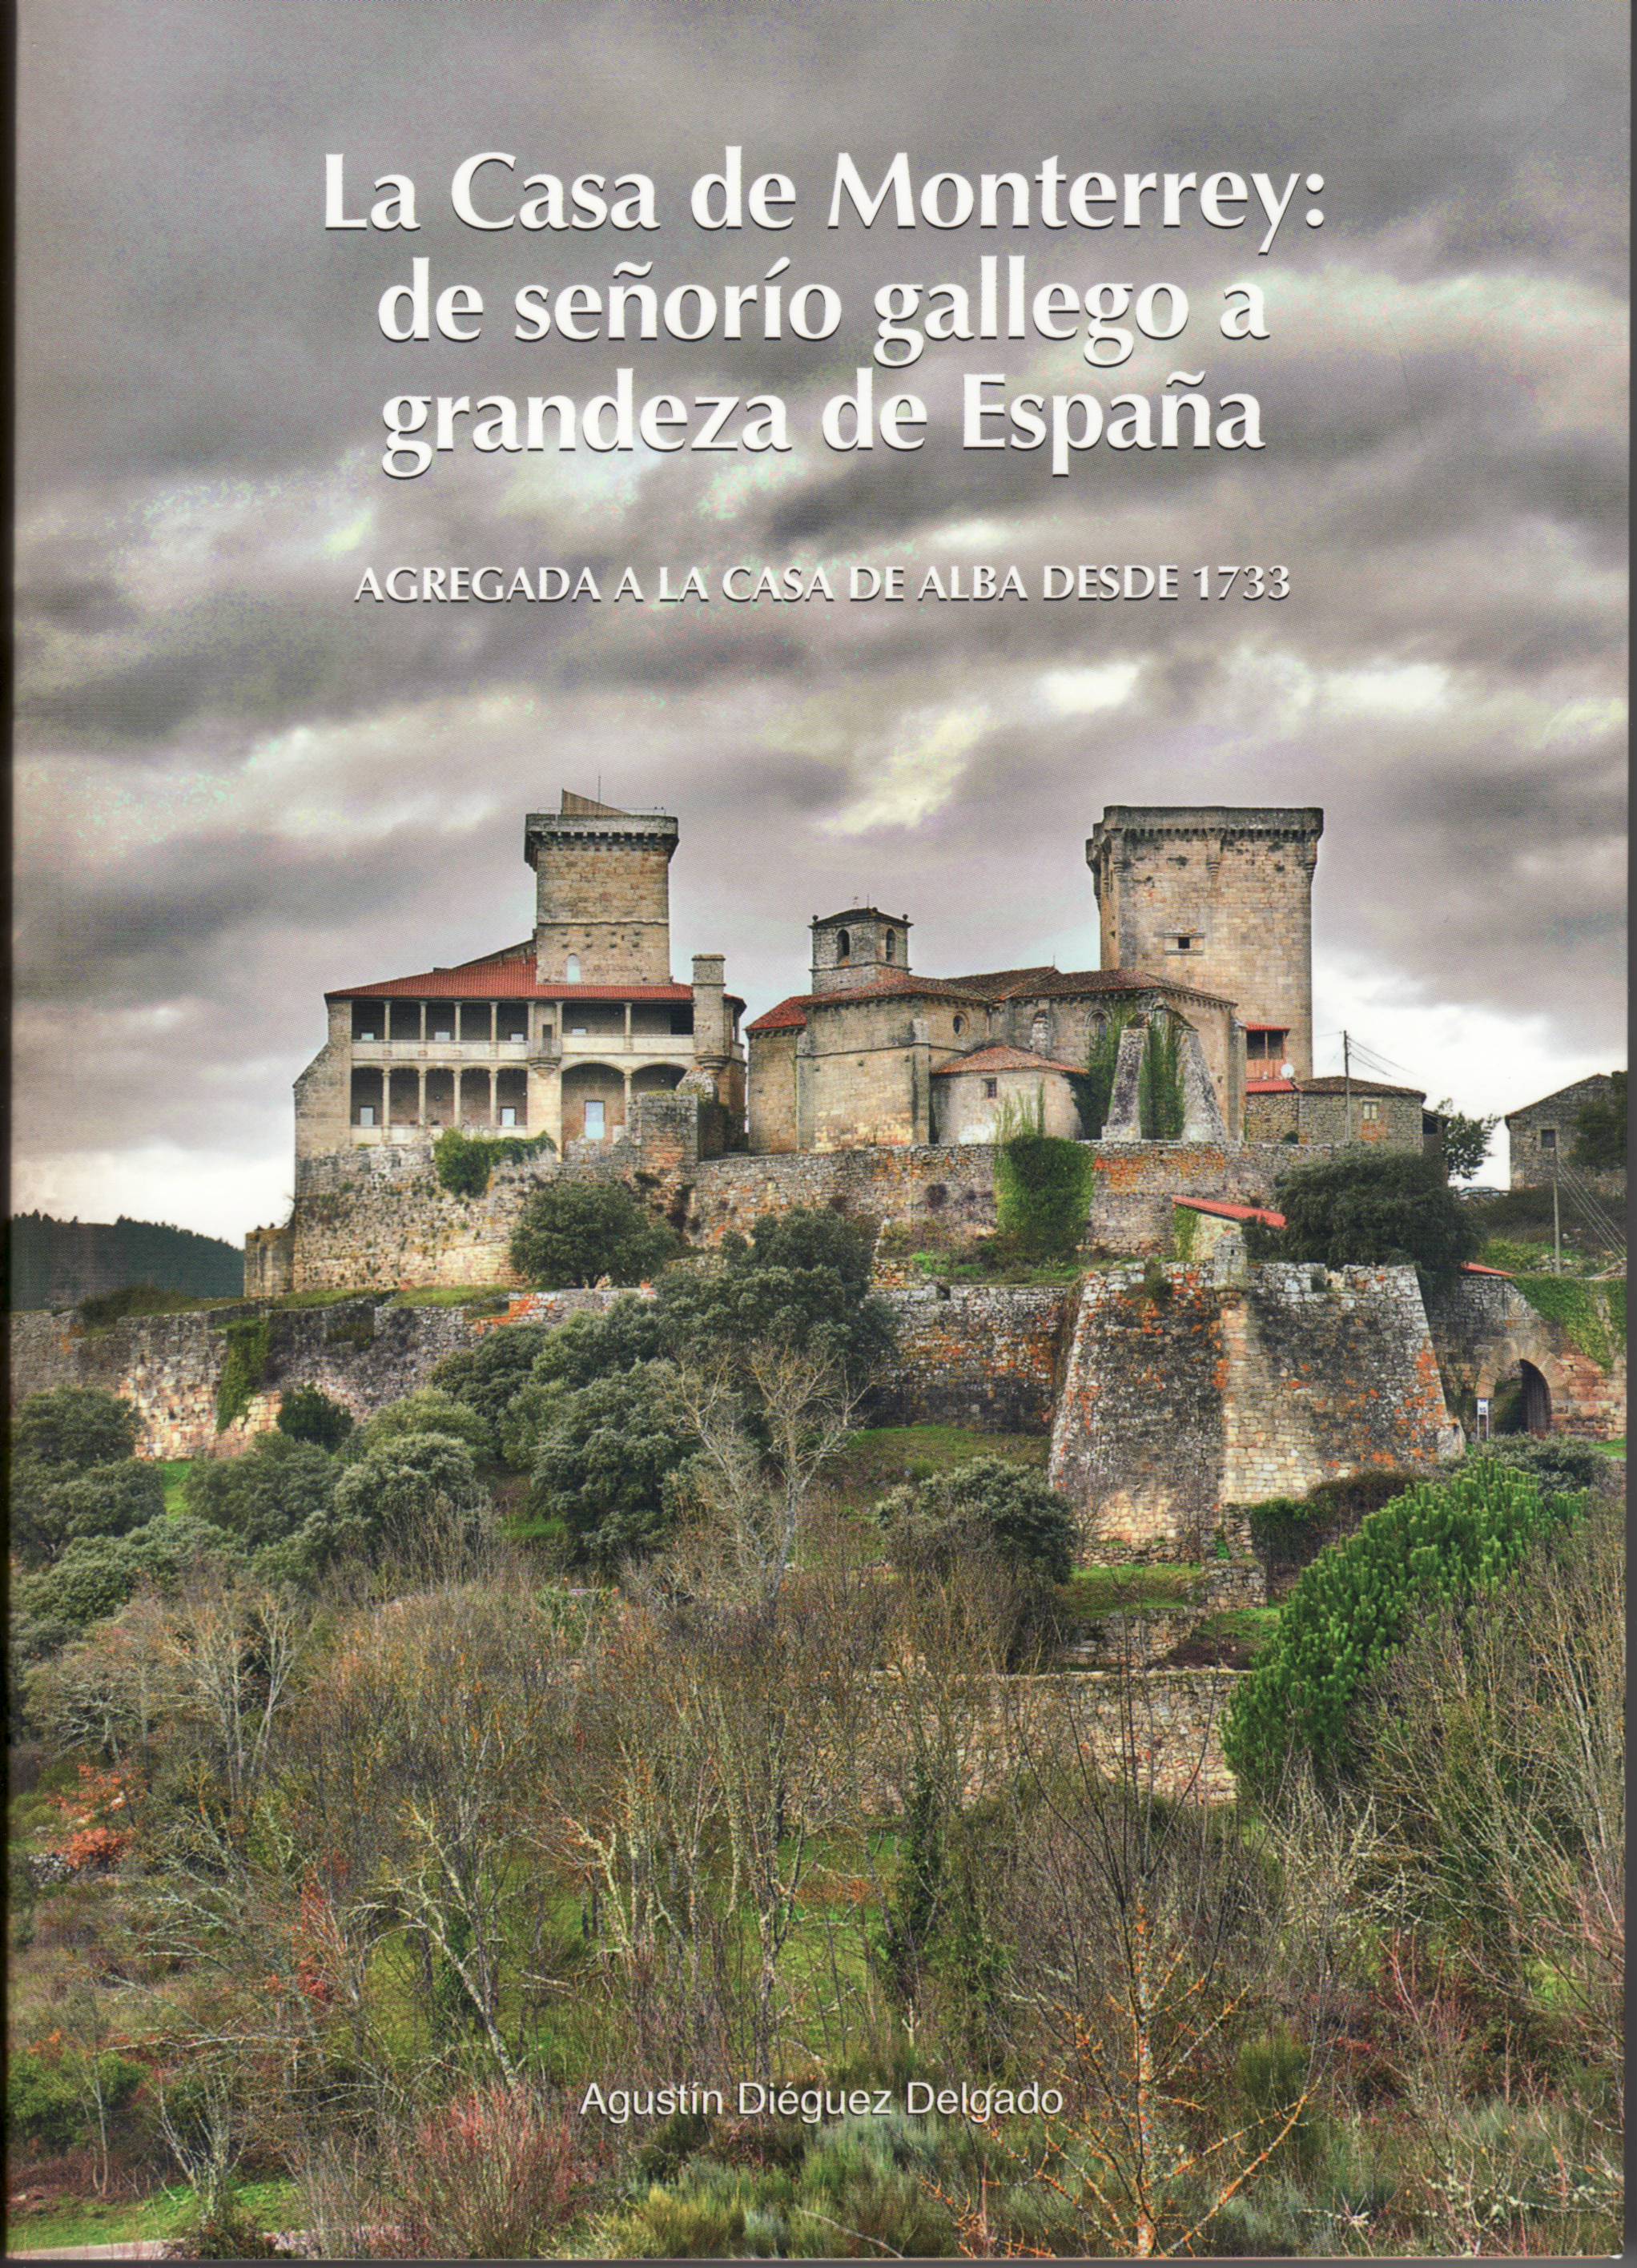 La Casa de Monterrey: de señorío gallego a grandeza de España